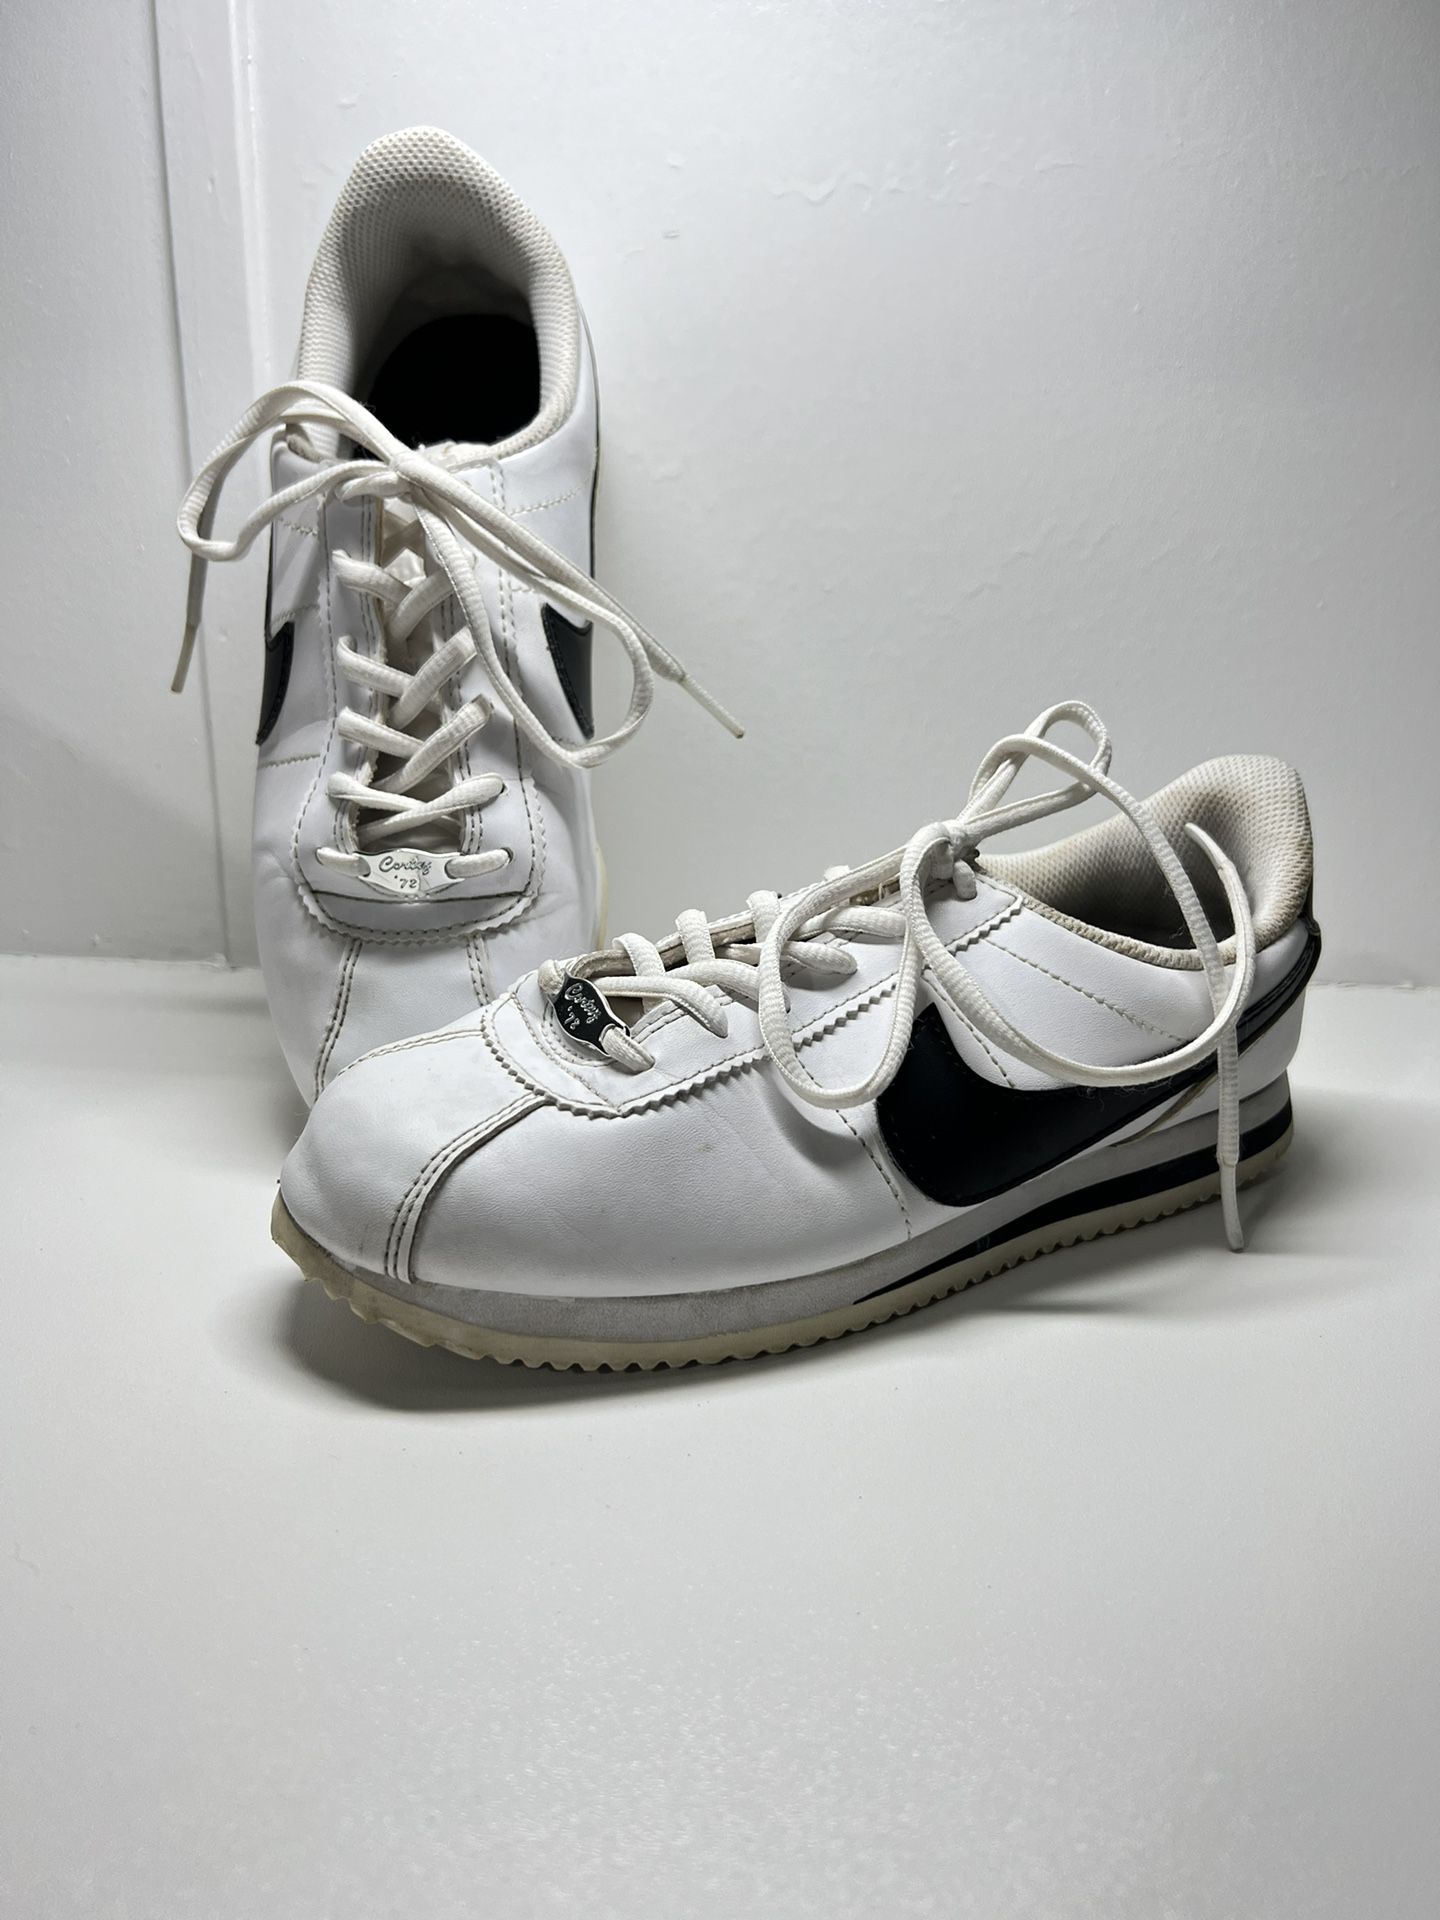 Nike Cortez unixes  Size 5.5  Basic White Black Classic Casual 